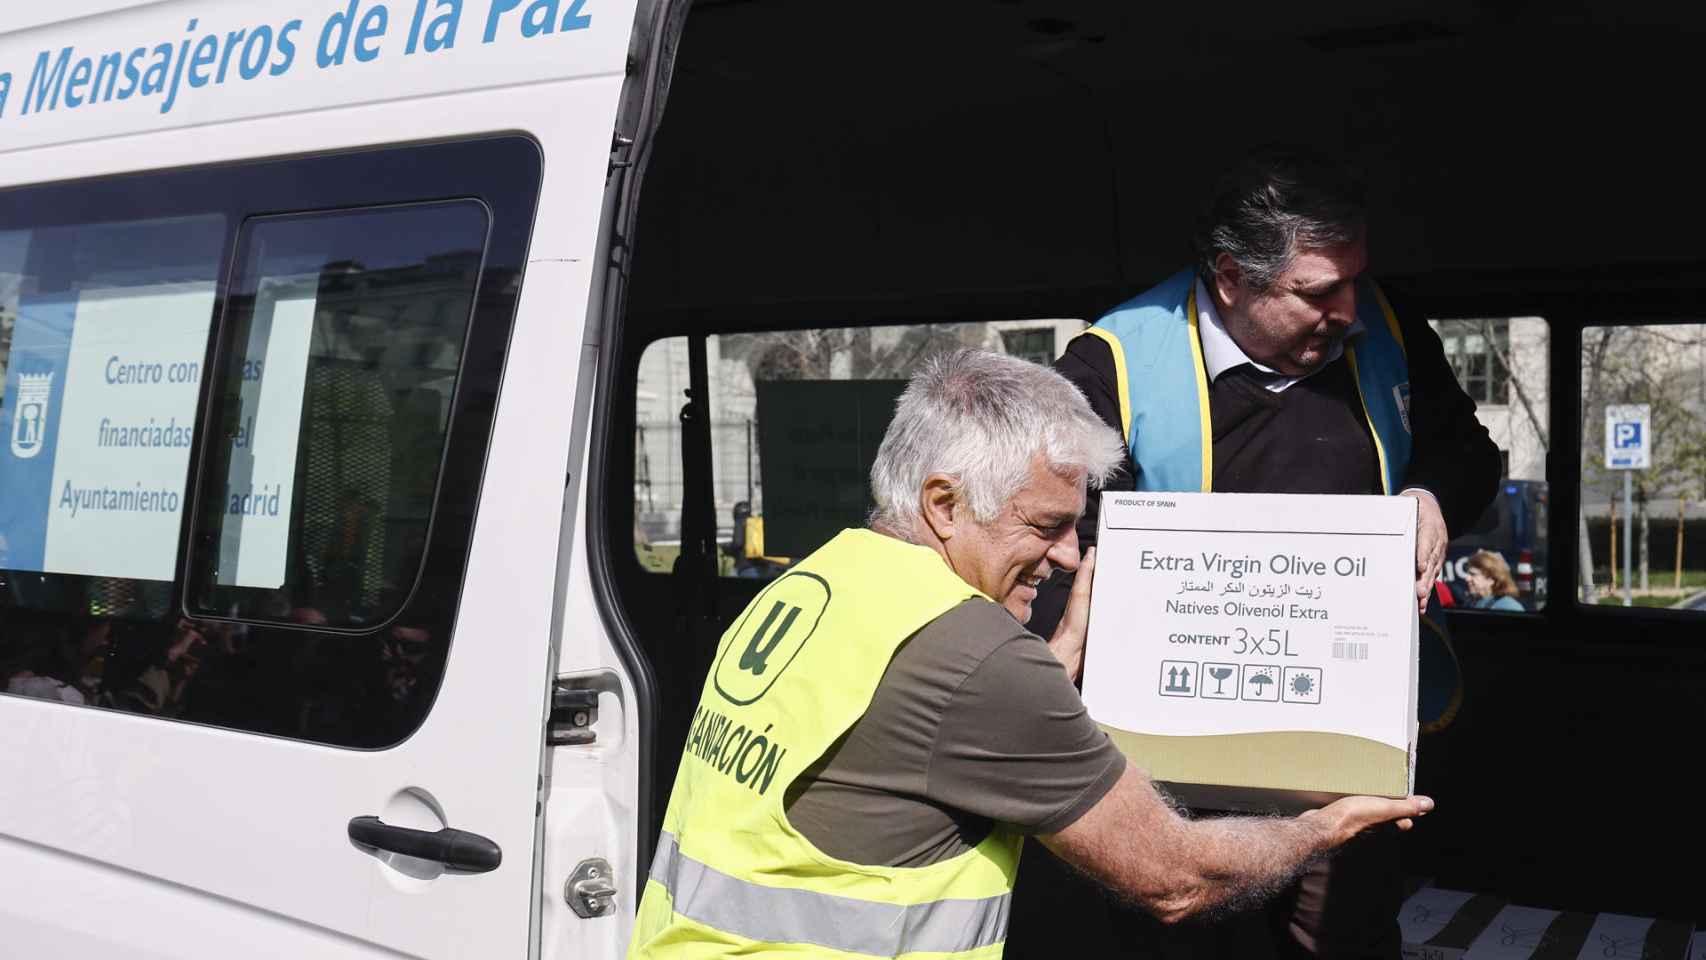 Unión de Uniones de Agricultores y Ganaderos hace una donación de 125 litros de aceite de oliva a la ONG Mensajeros de la Paz este domingo.